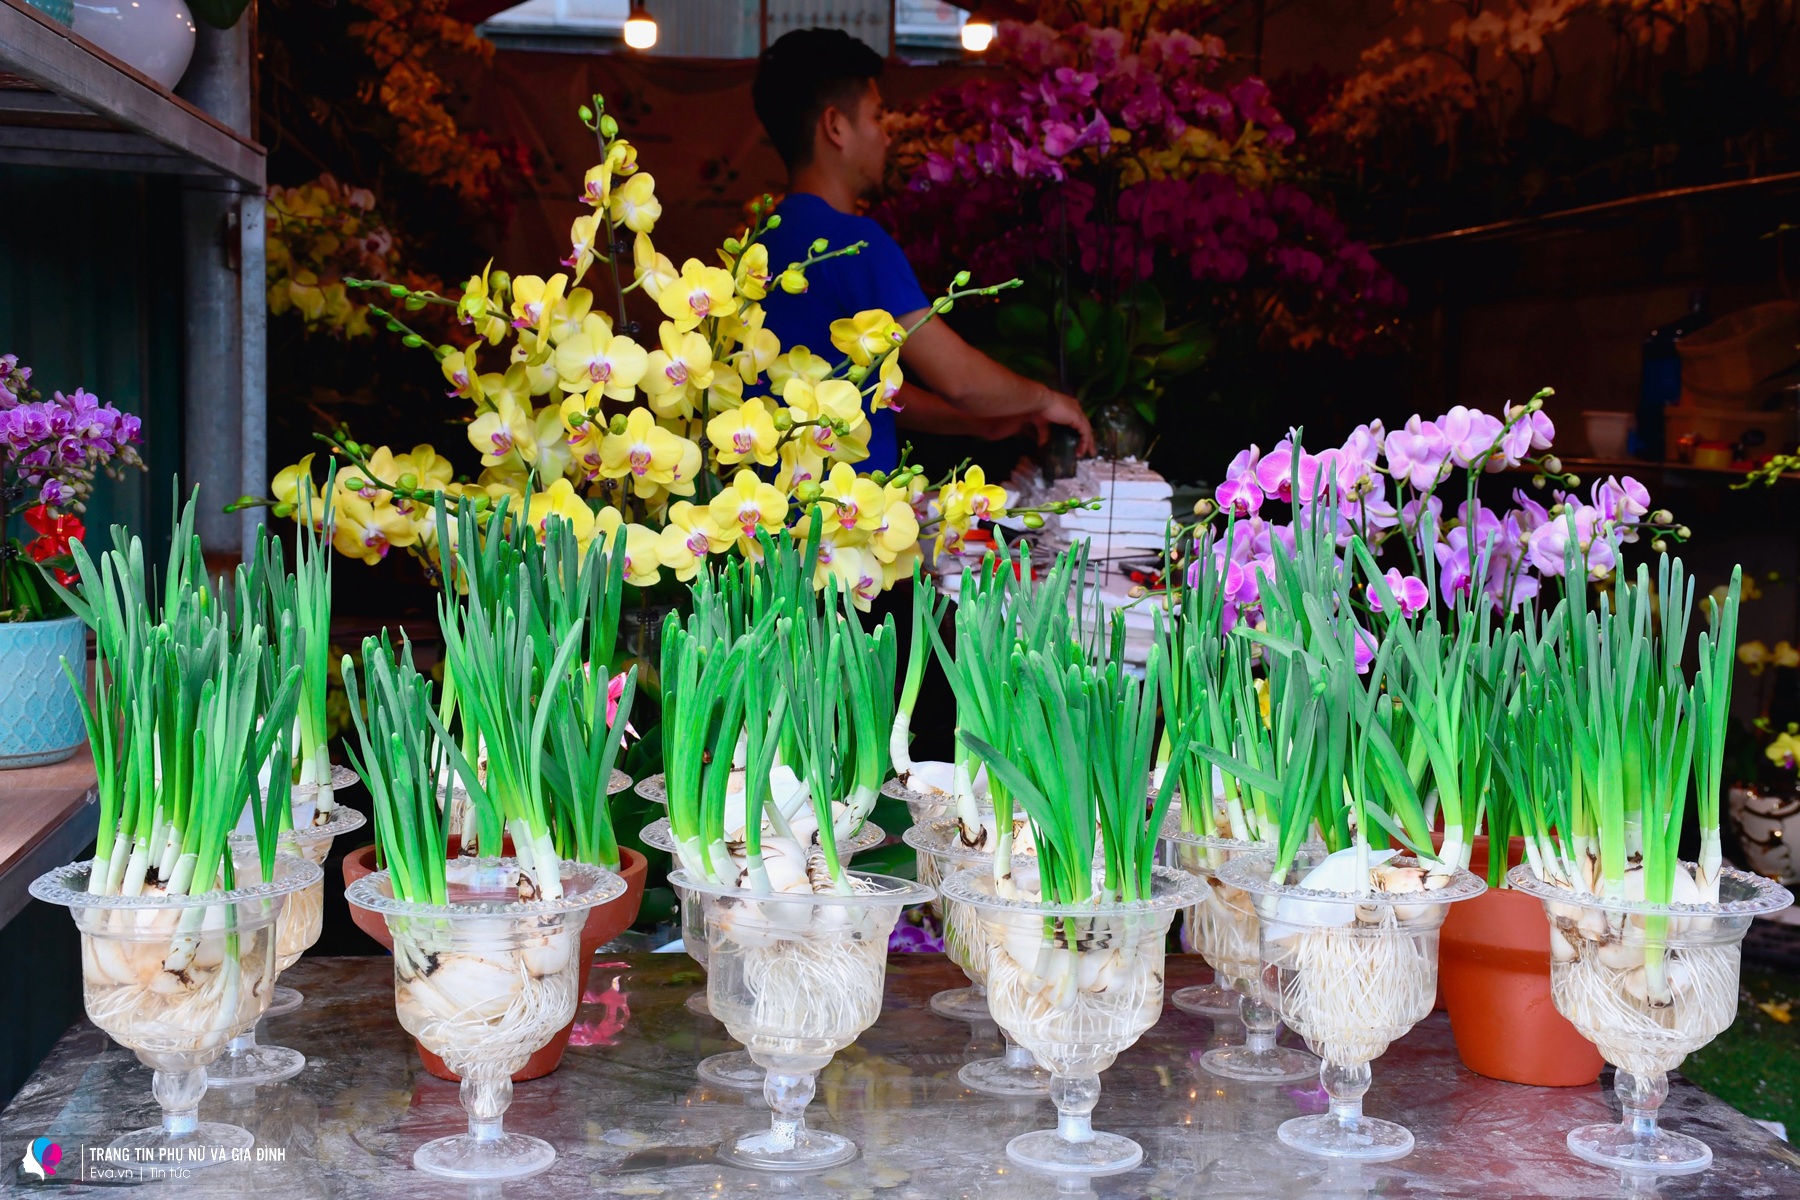 Với những loại hoa lan cao cấp, giá cả dao động từ 100-250k một cành. Một chậu lan nhỏ phù hợp để bàn có giá khoảng 300-500k.